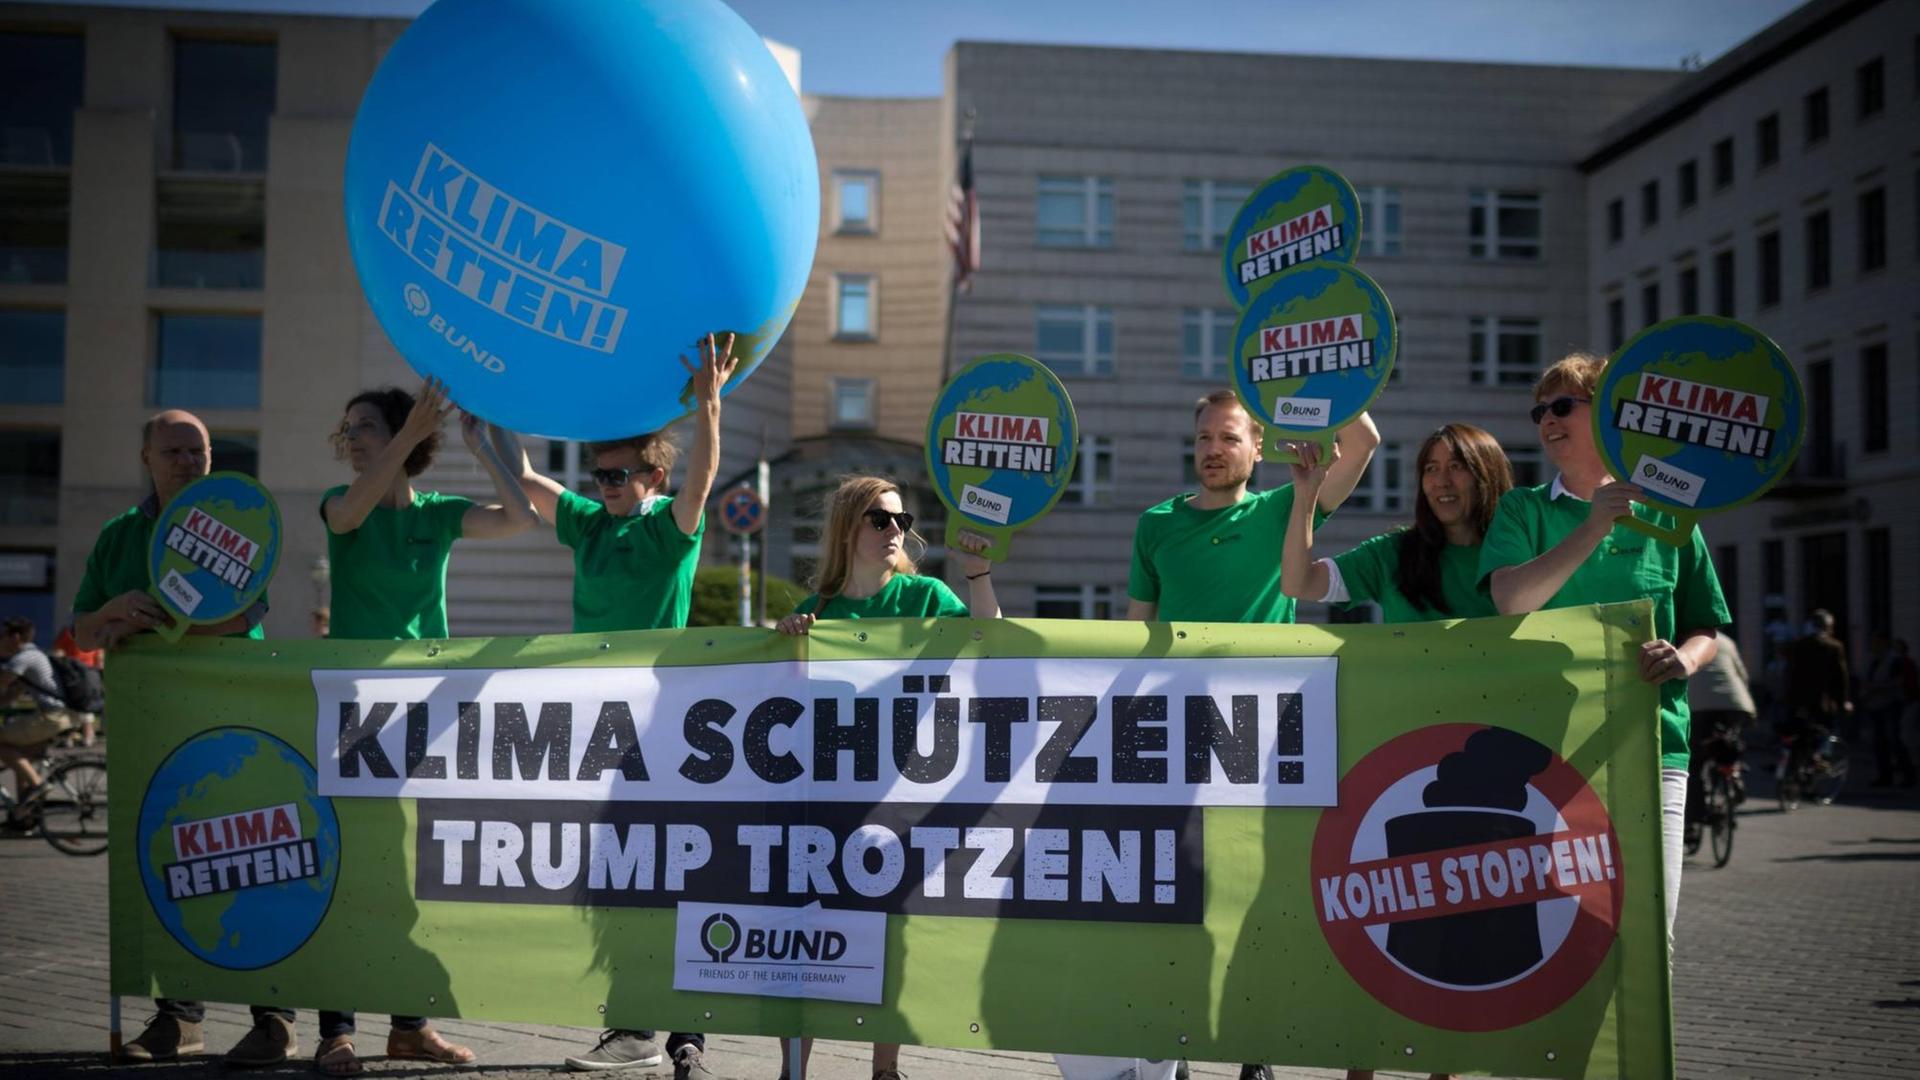 Aktivisten der Umweltorganisation demonstrieren gegen die Klimapoltik der USA mit Transparenten